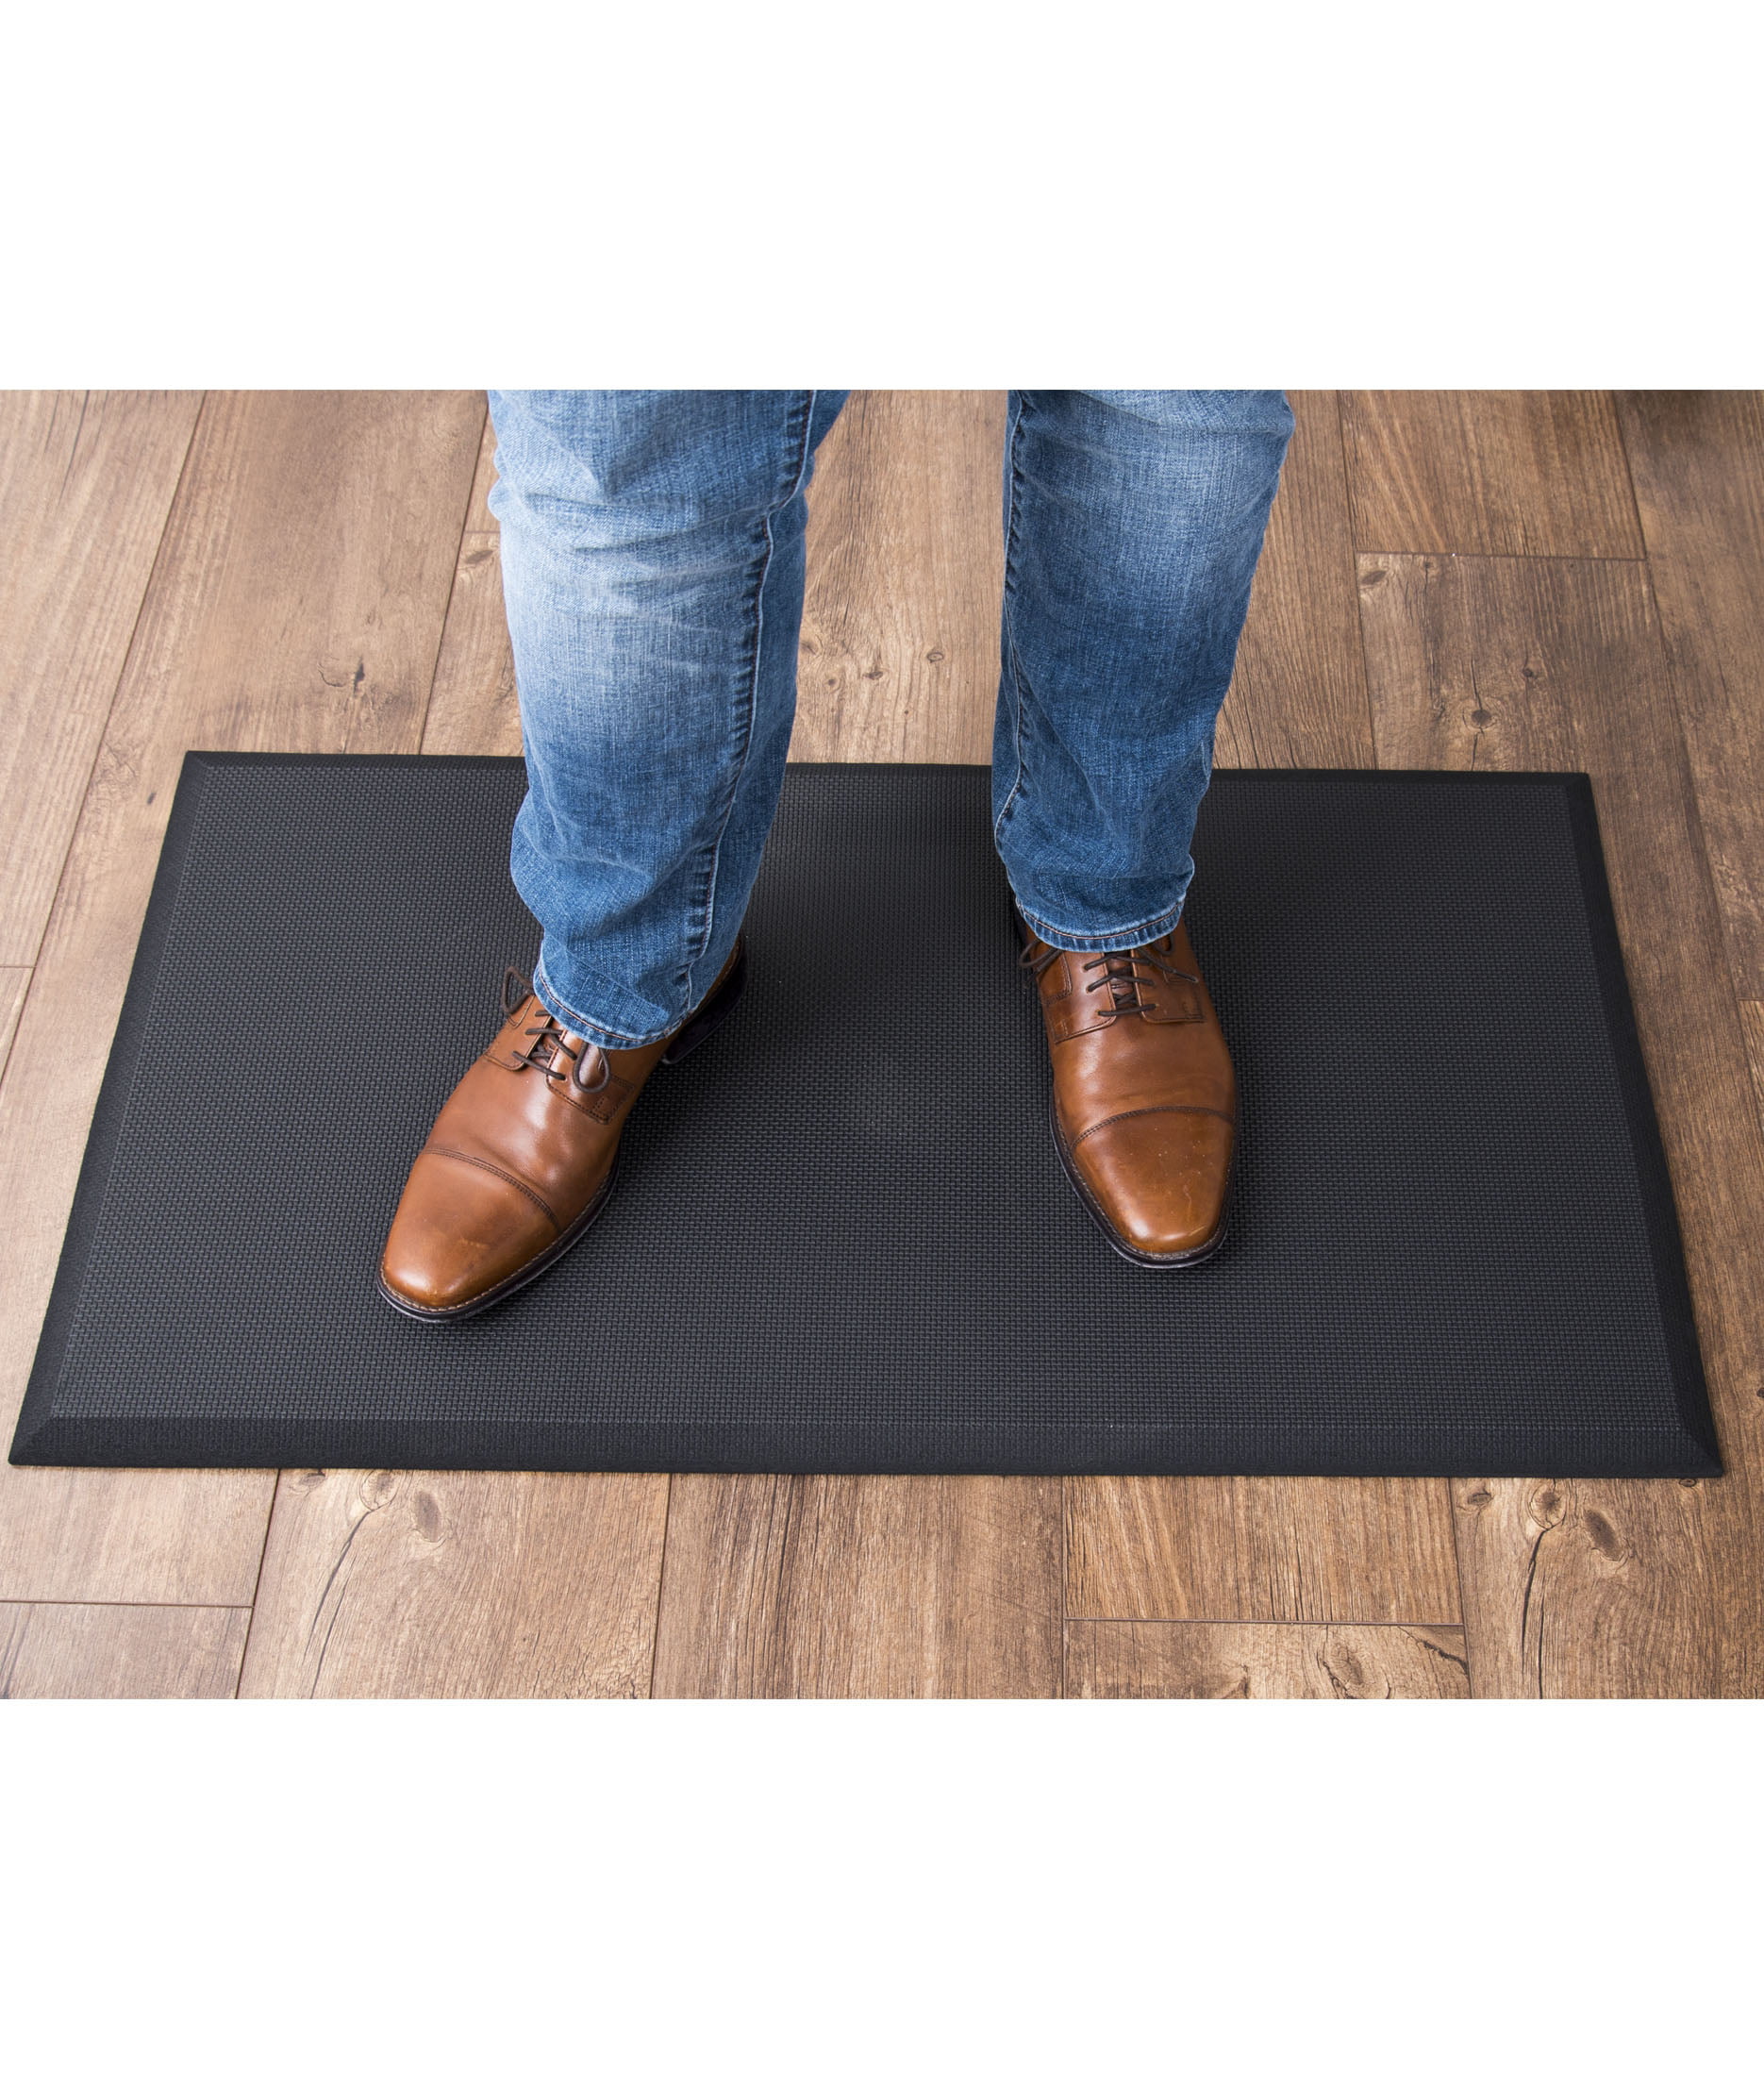 DIY Best Ergonomic Mat For Standing Desk for Small Room